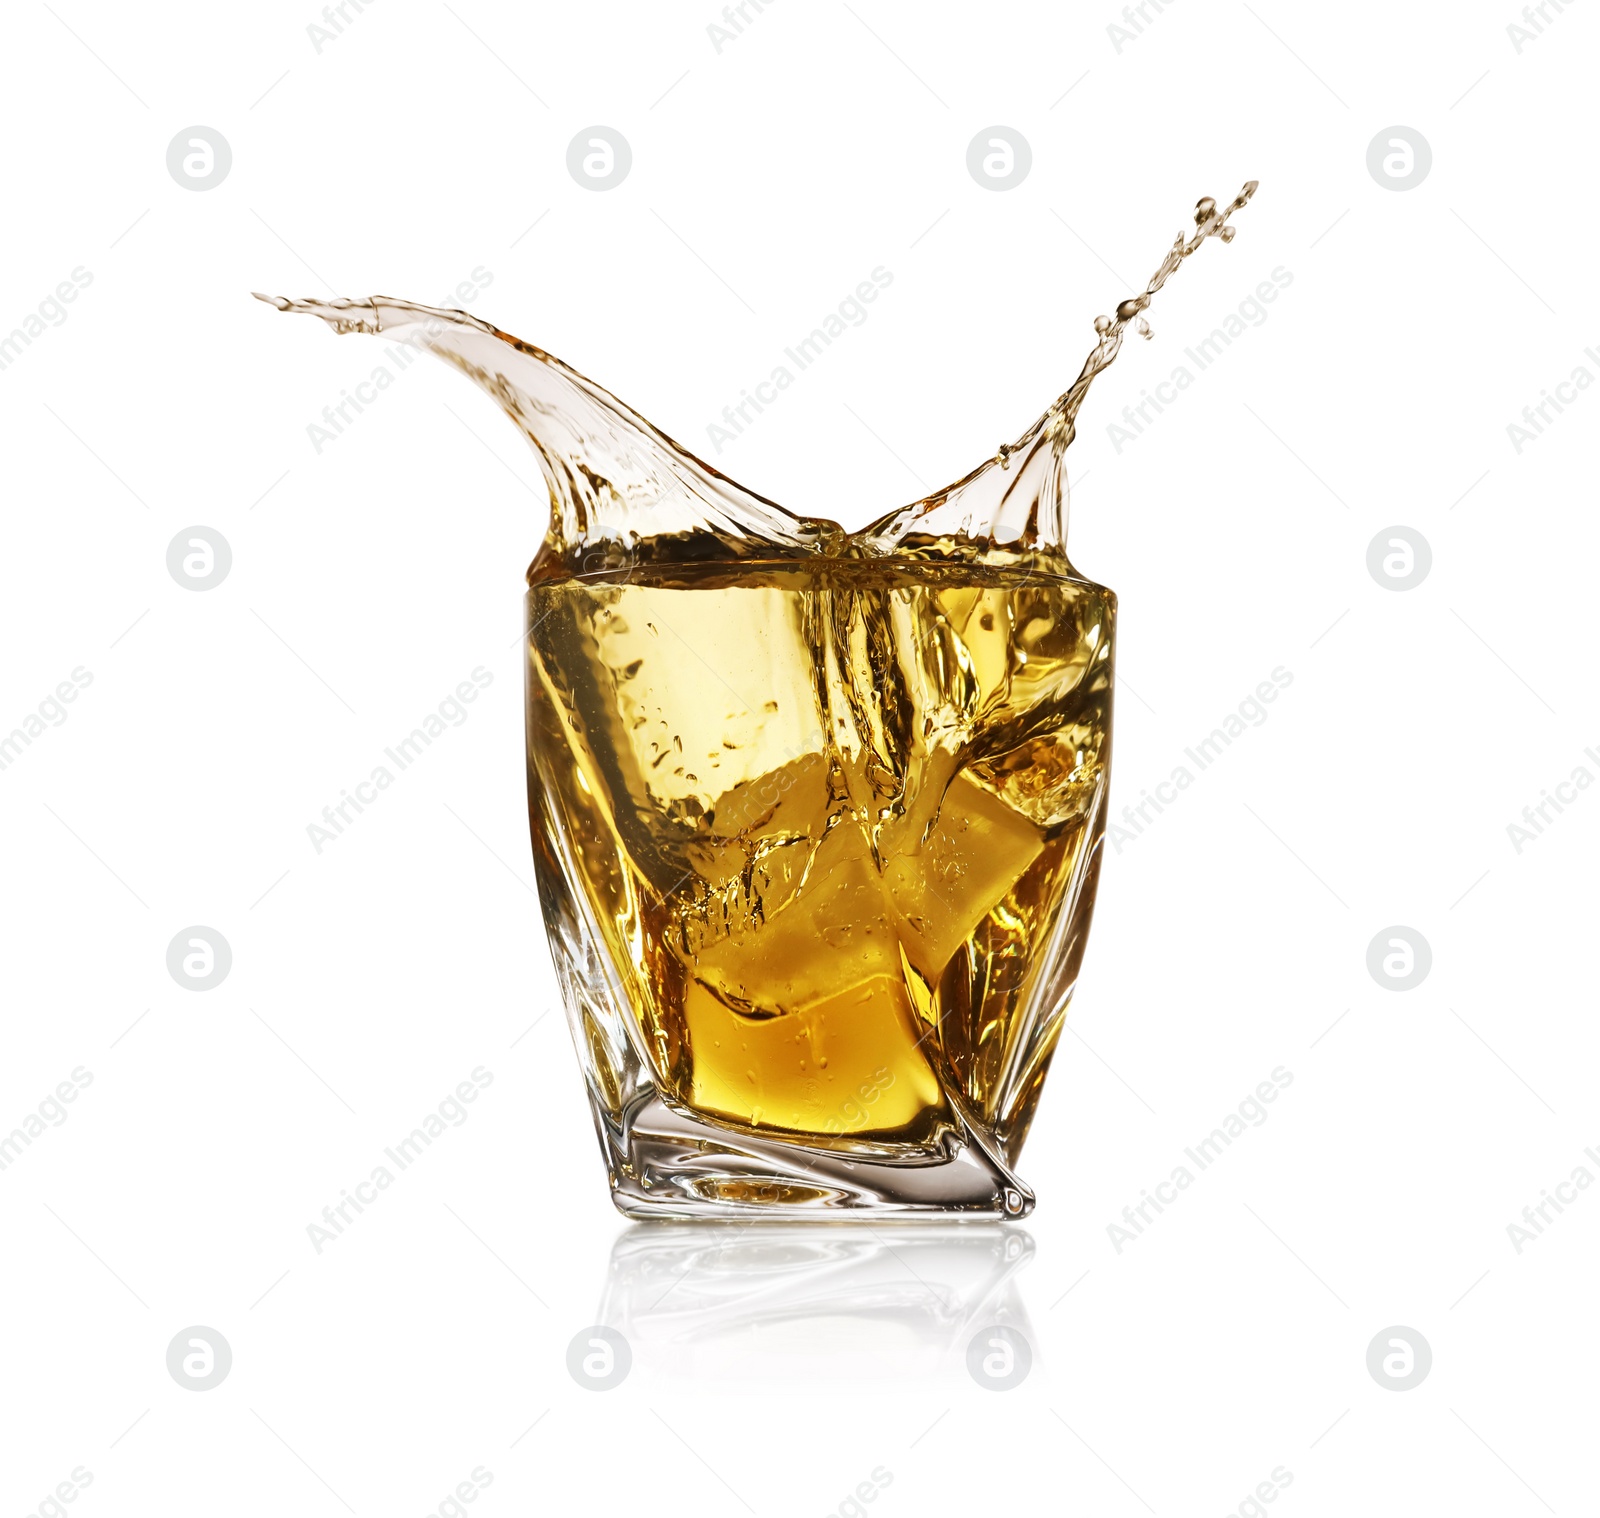 Photo of Whiskey splashing in glass on white background